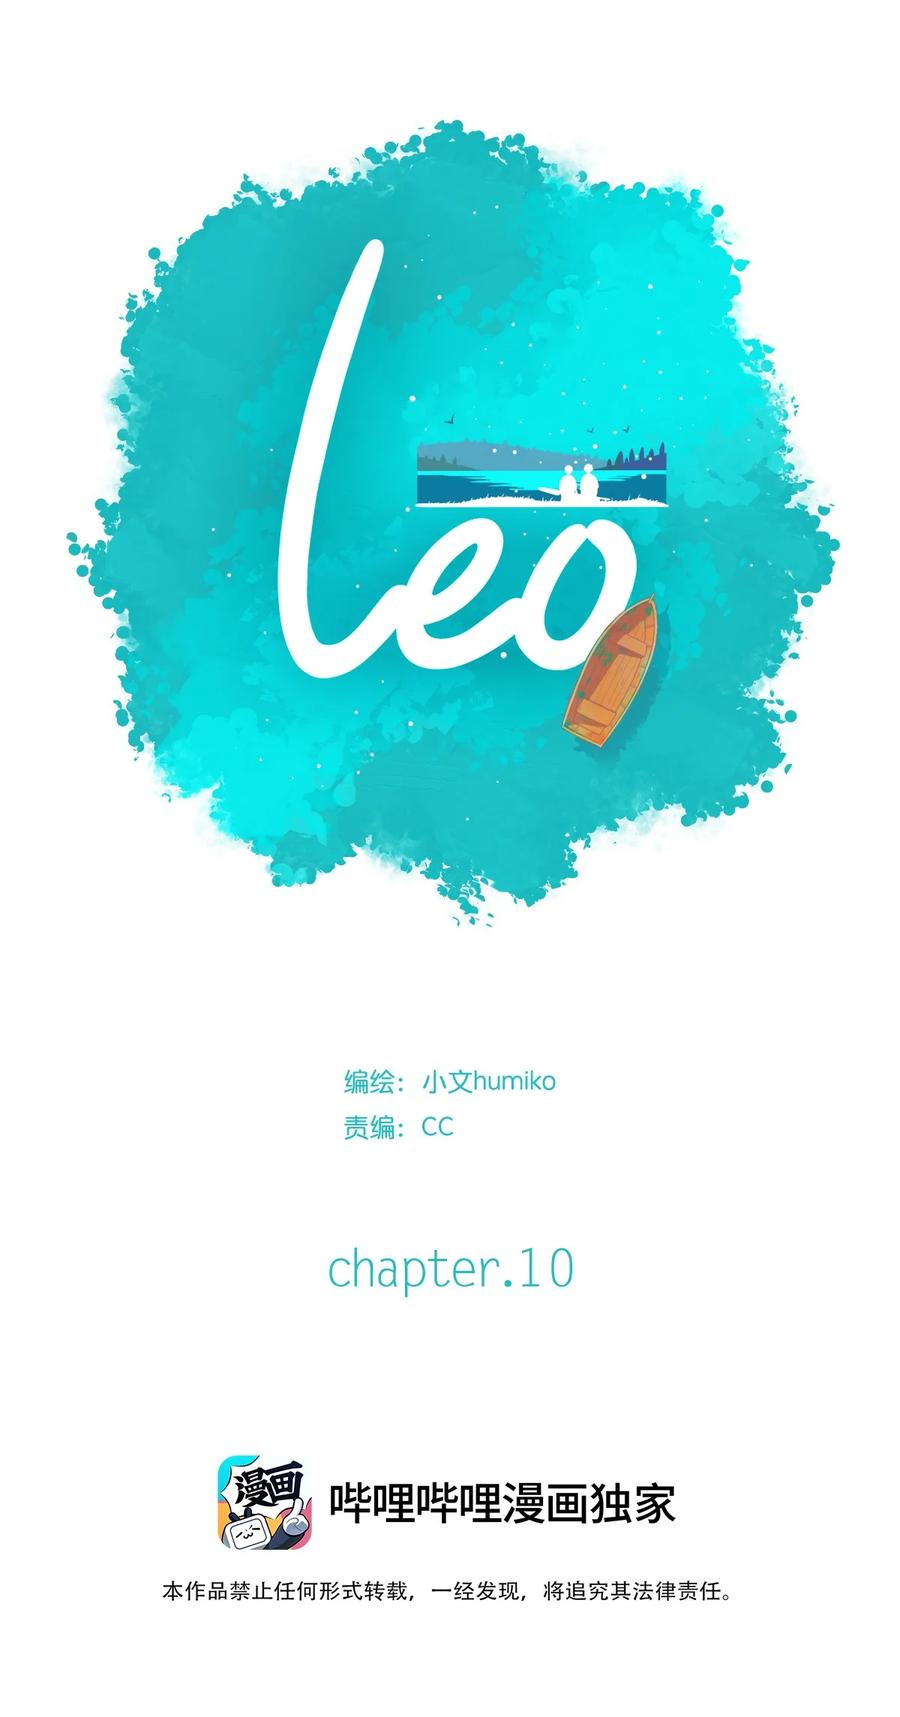 利奧 - 10 chapter.10 - 2